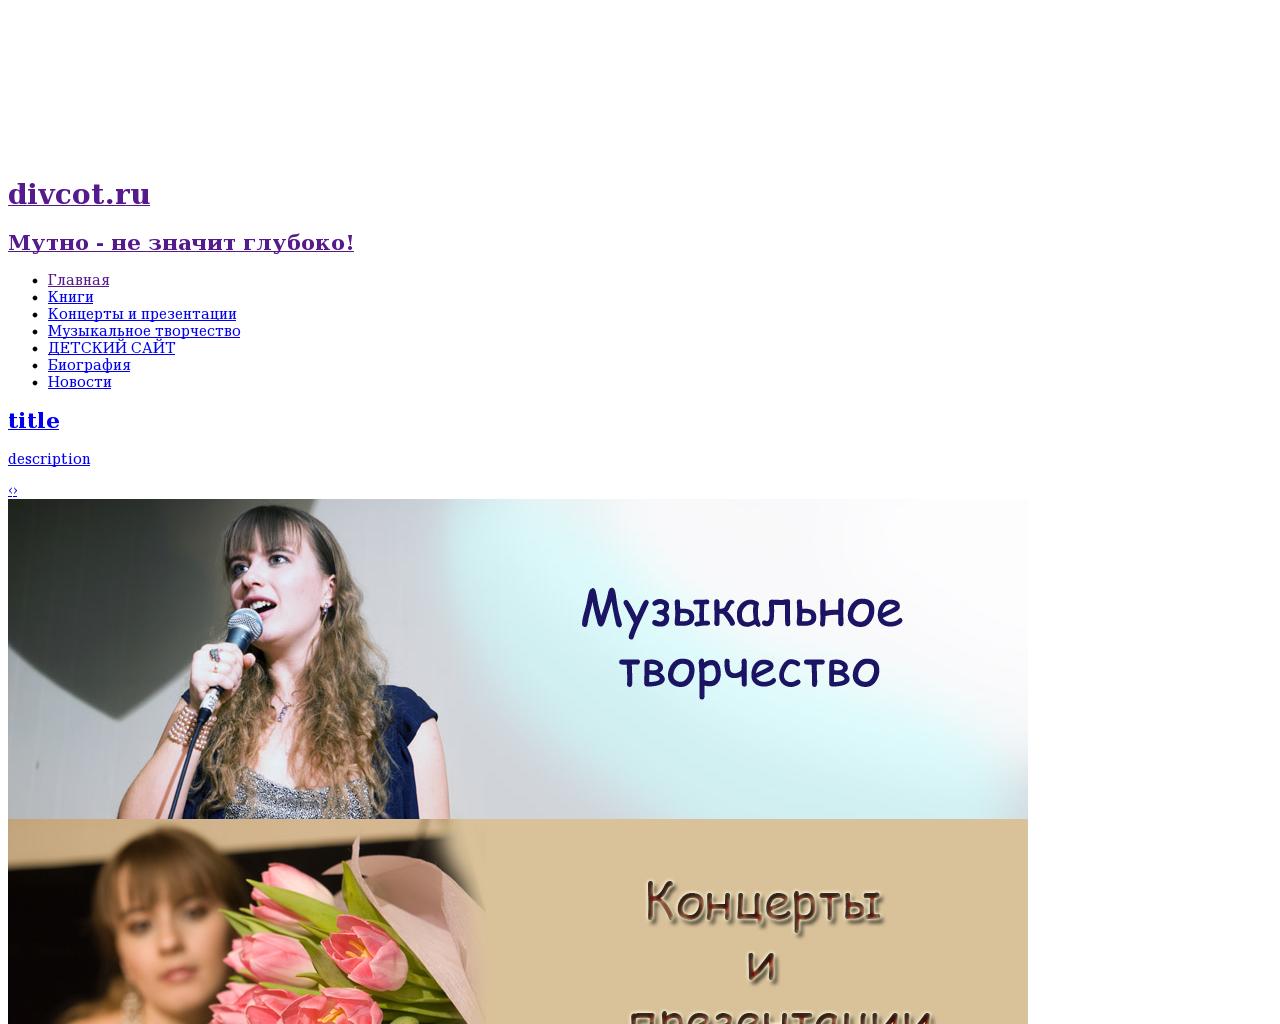 Изображение сайта divcot.ru в разрешении 1280x1024